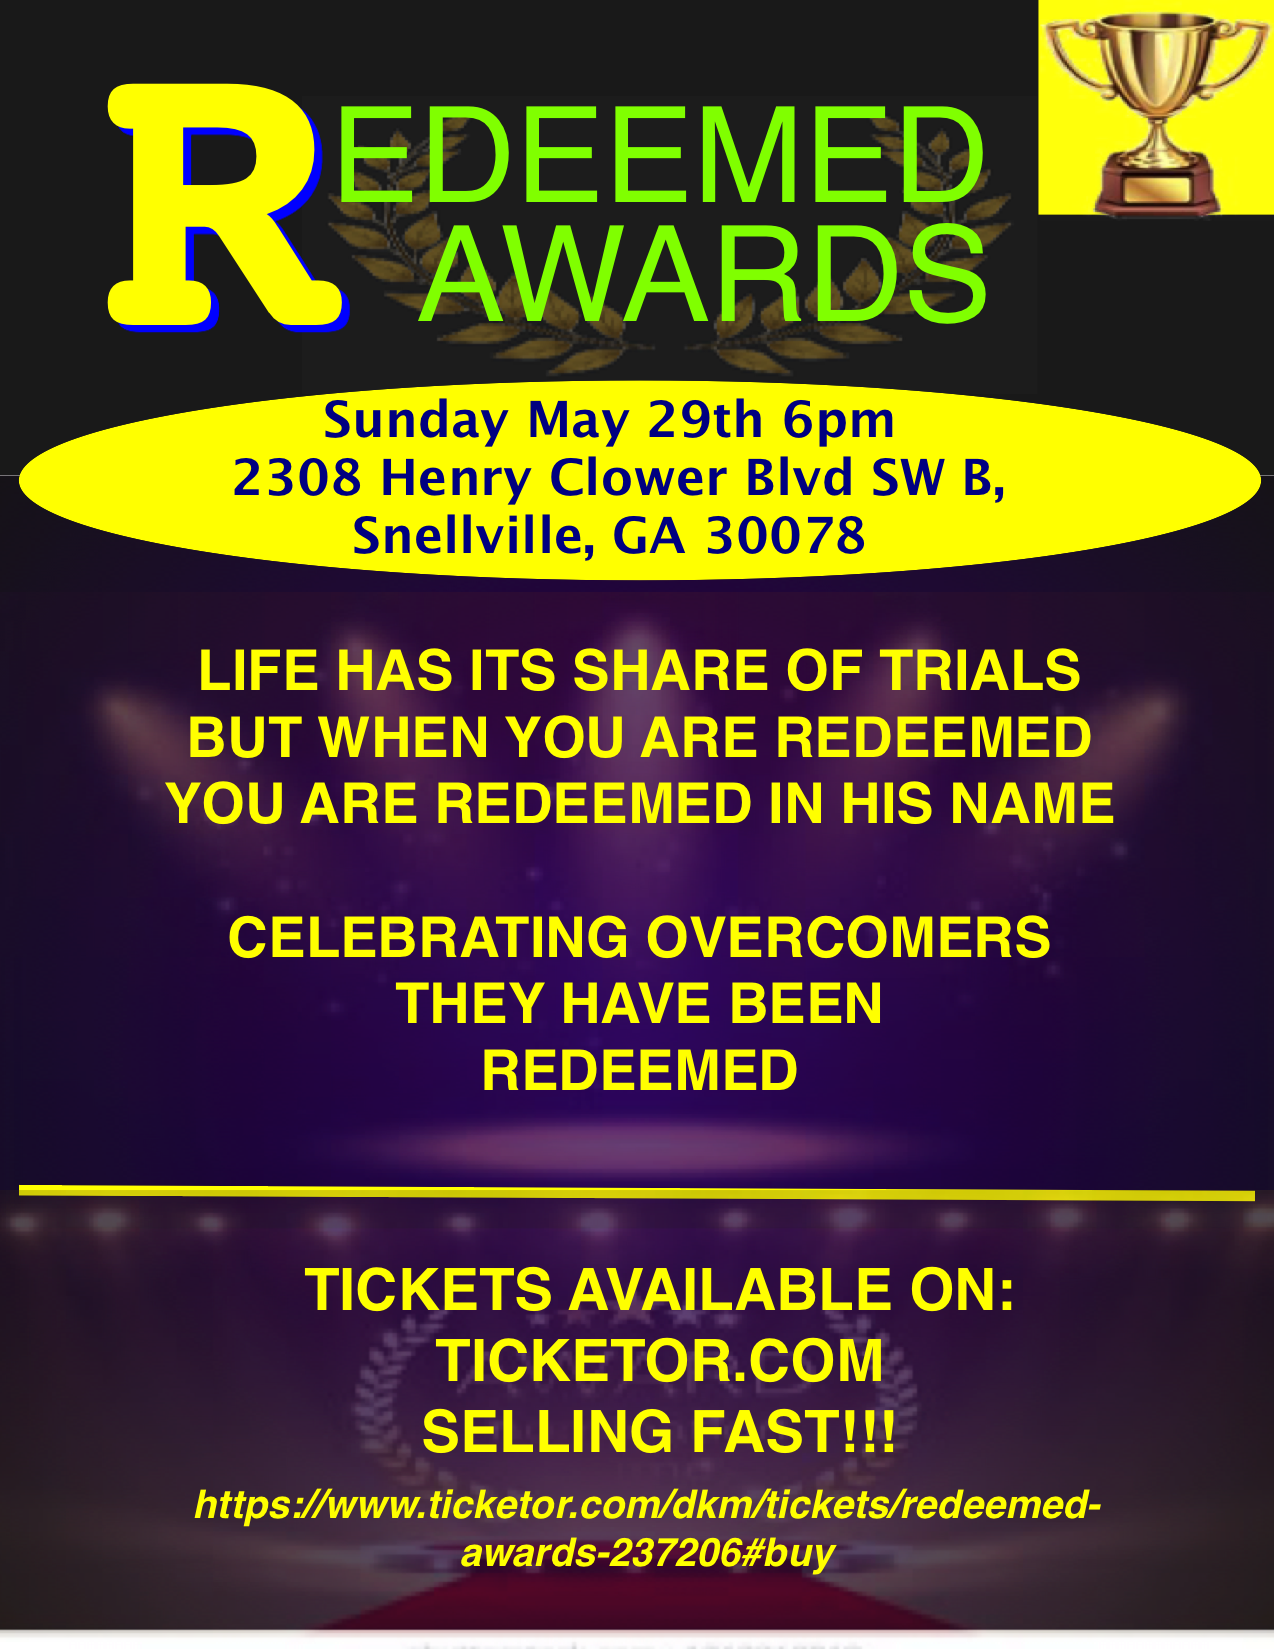 ReDeemed Awards WE are Overcomers on May 29, 18:00@SENAY EVENT HALL - Compra entradas y obtén información enDKM MEDIA & ASSOCIATES 